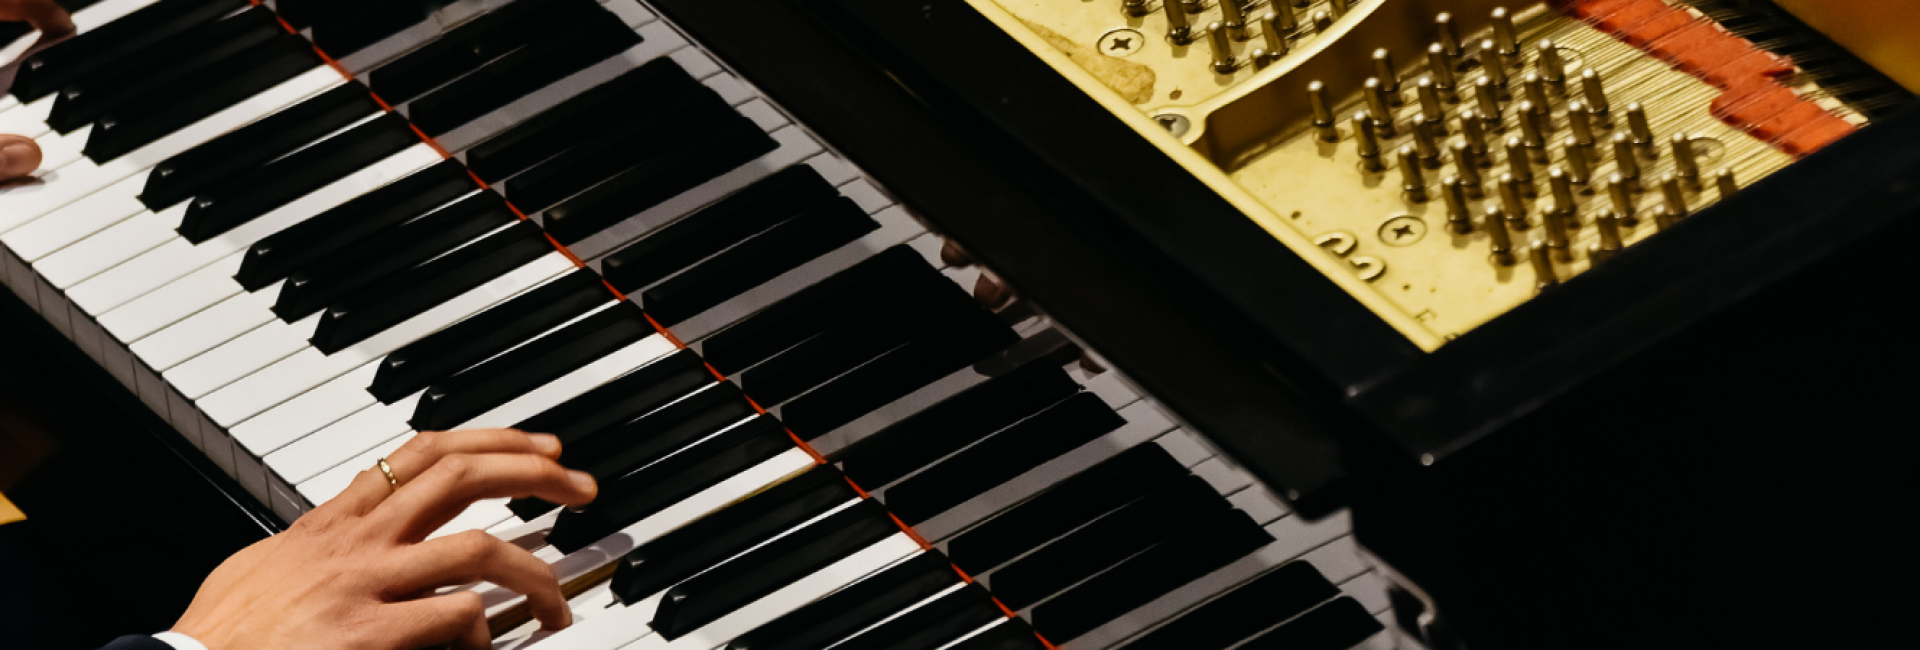 piano-succespad-methode pianoles van rene